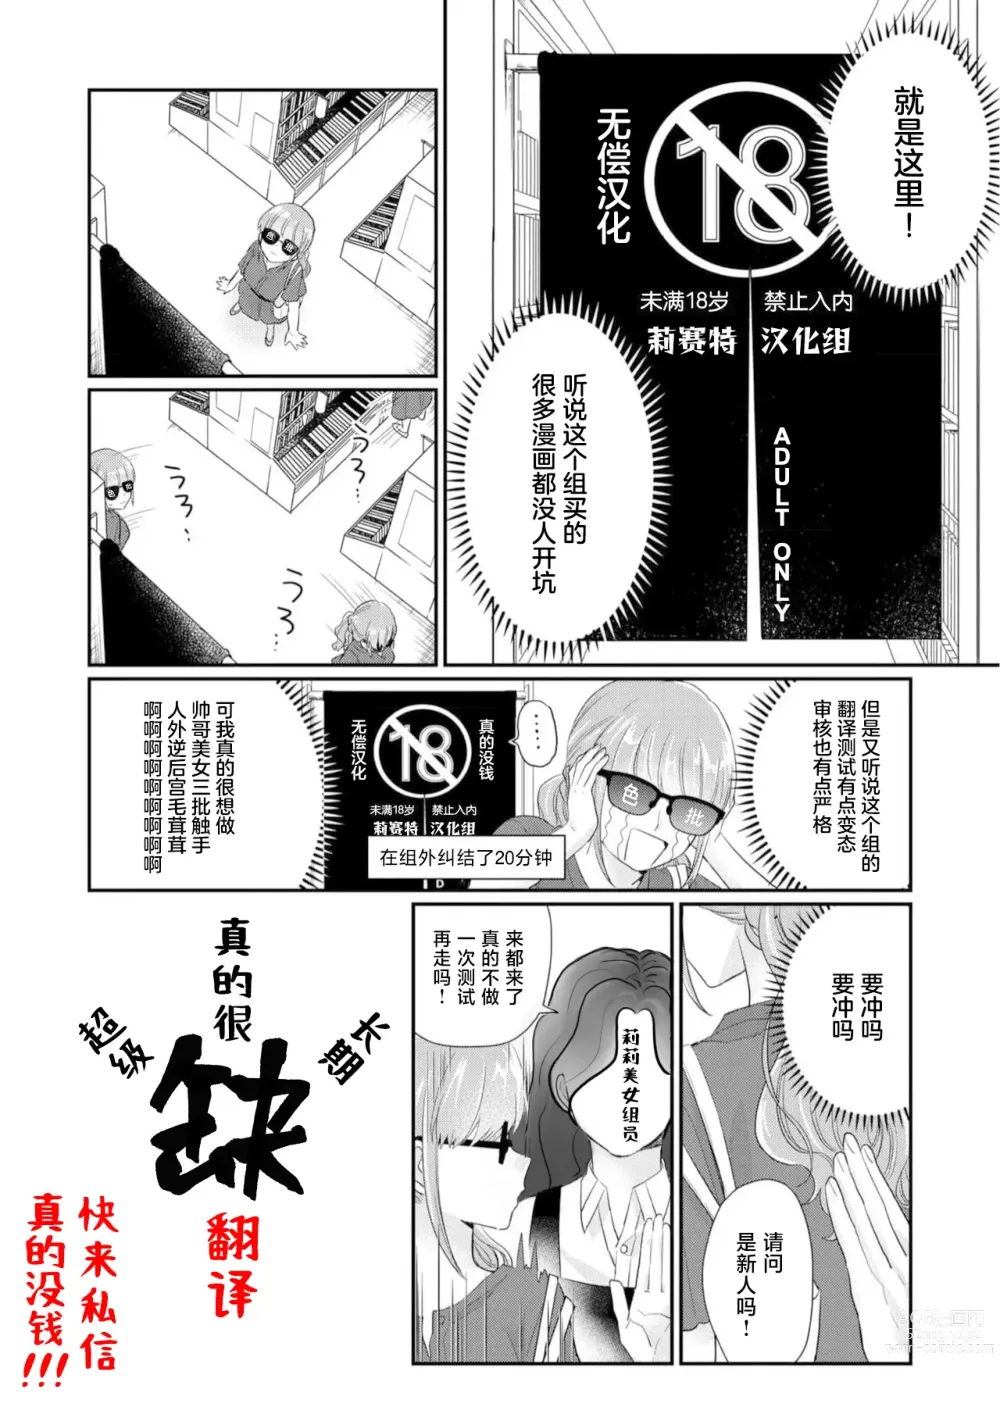 Page 9 of manga 关于沉浸在激烈口交游戏中将浓精射入嘴里的恋人的事